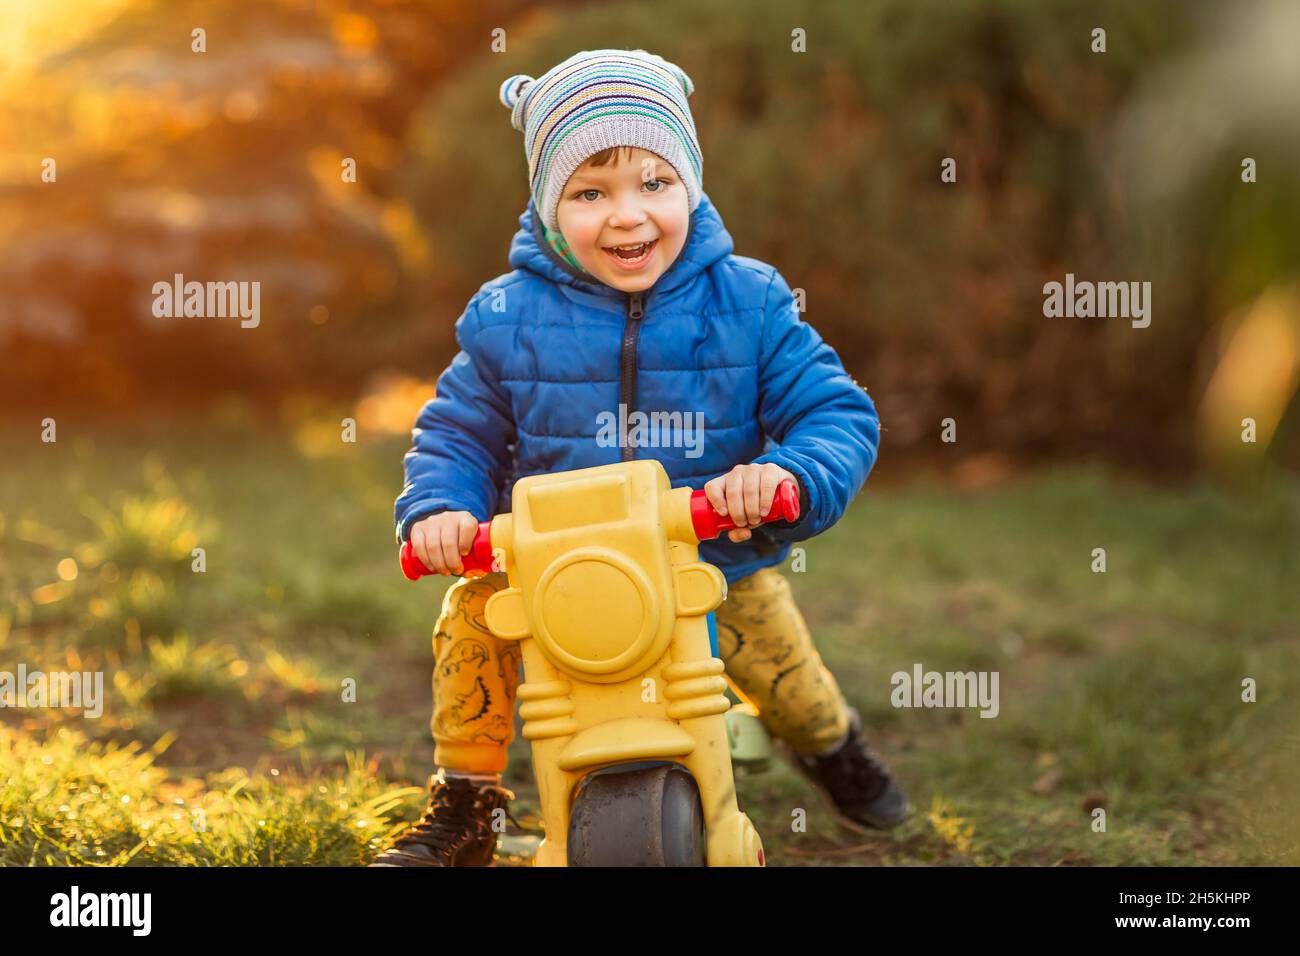 Little boy with blue eyes and blue jacketsitting on plastic toy Stock Photo